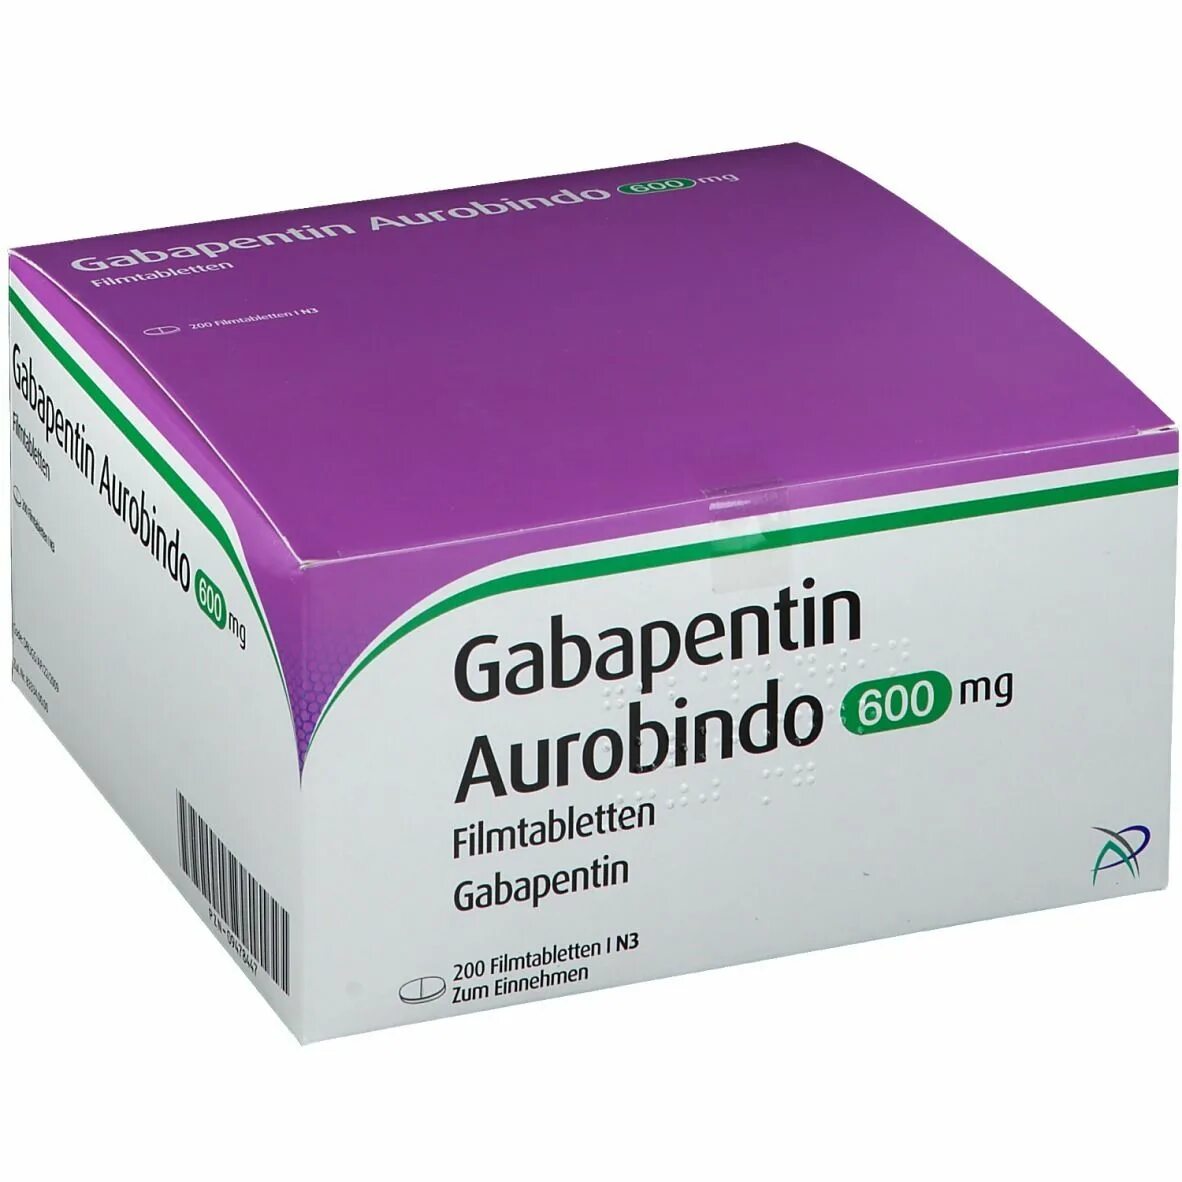 Габапентин 600 мг. Габапентин Нейронтин 600мг. Габапентин канон 600мг. Габапентин фото.